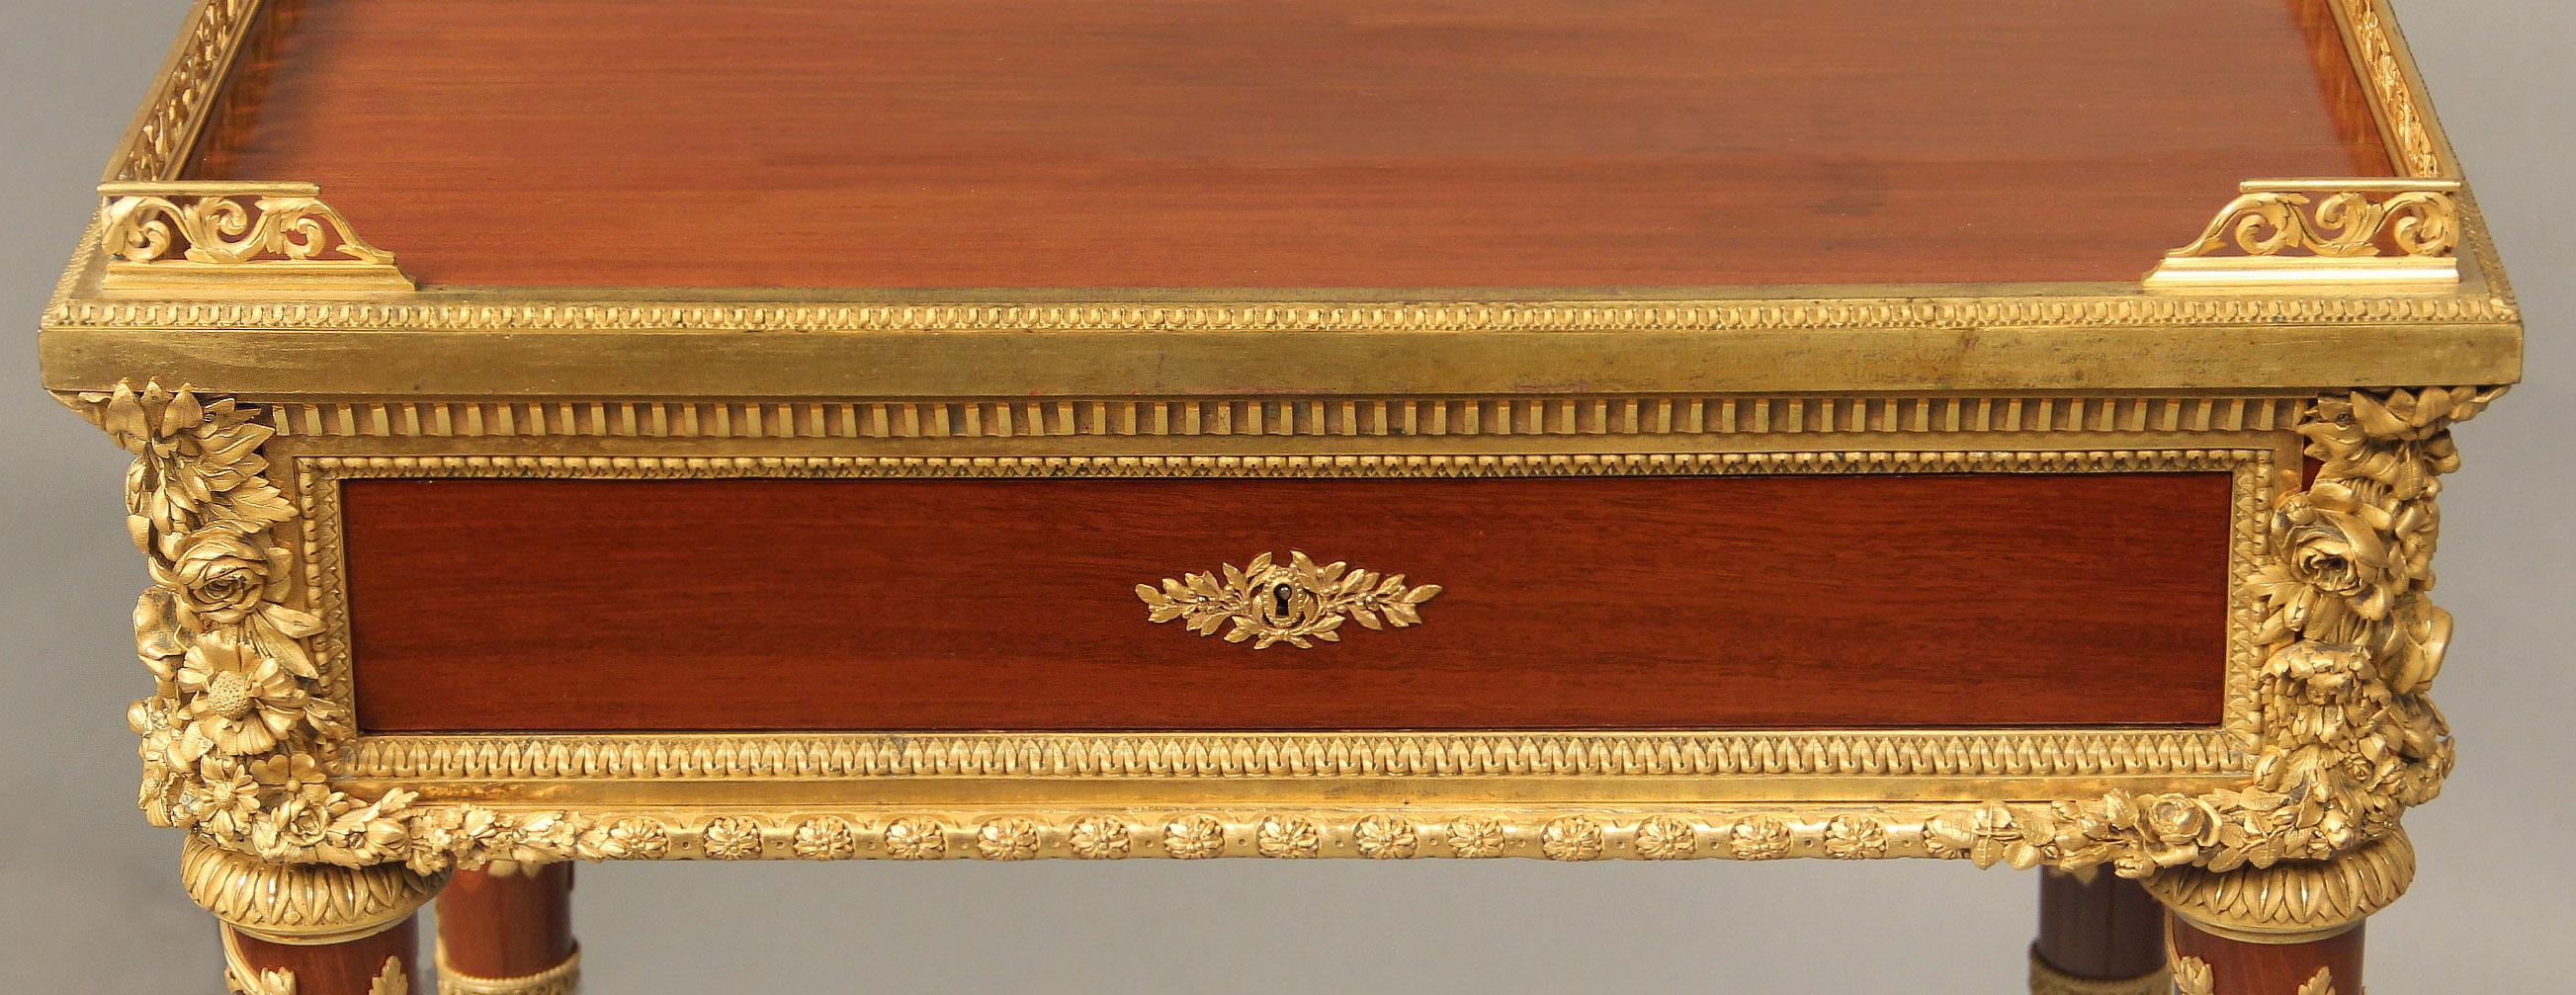 Guéridon de style Louis XVI de la fin du 19ème siècle en bronze doré d'excellente qualité par Henry Dasson

Henry Dasson

Le plateau rectangulaire avec galerie percée aux trois quarts, au-dessus d'un seul tiroir en frise, les côtés montés chacun